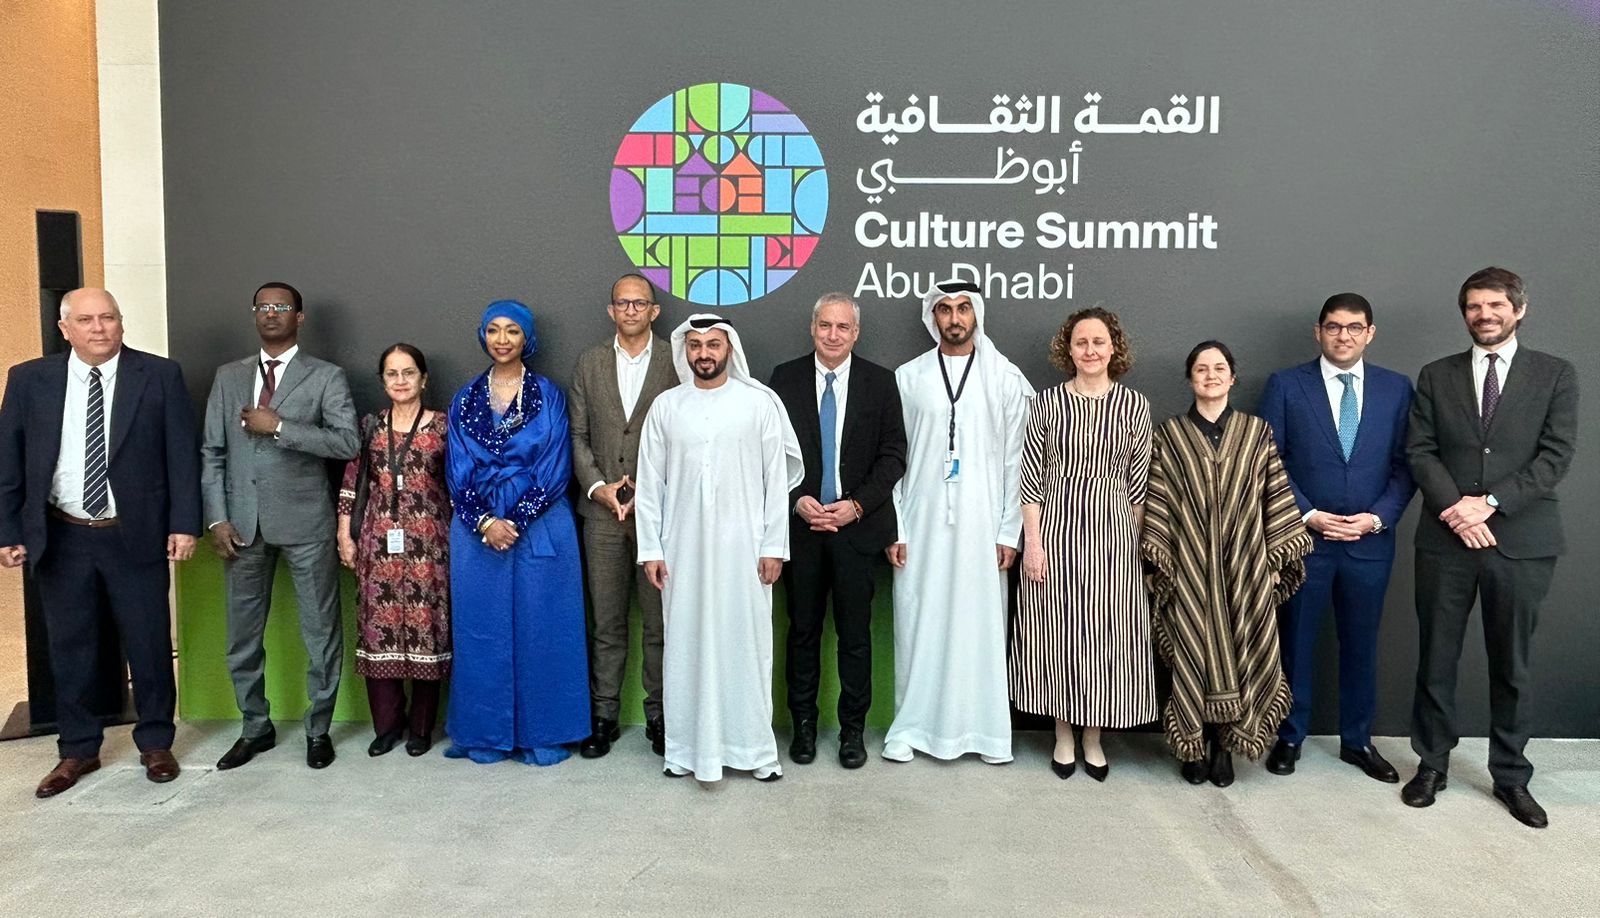 المغرب يشارك في الحوار الوزاري لقمة الثقافة في أبو ظبي